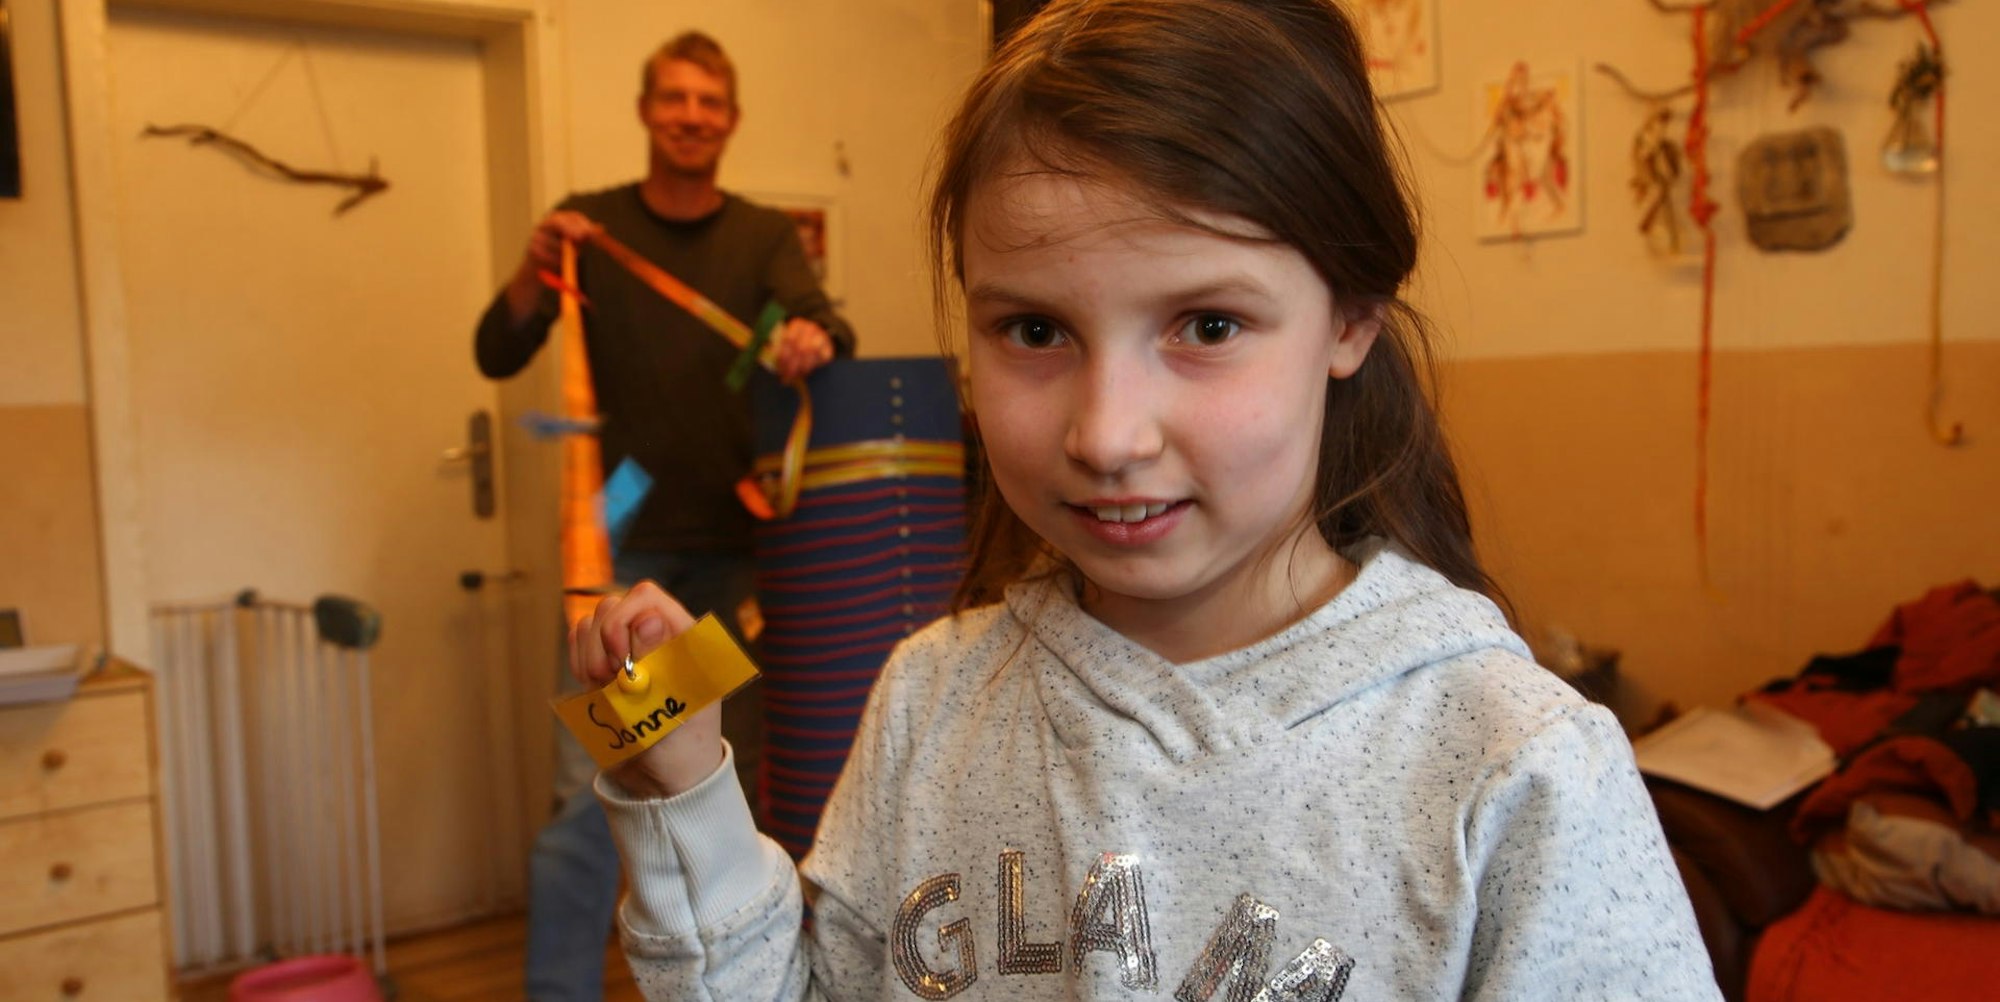 Die Dimensionen im Sonnensystem stellt Freya Vey anschaulich dar. Mit ihrem Vater Torsten hat sie am Projekt gearbeitet, das sie am Freitag bei „Jugend forscht“ präsentiert.